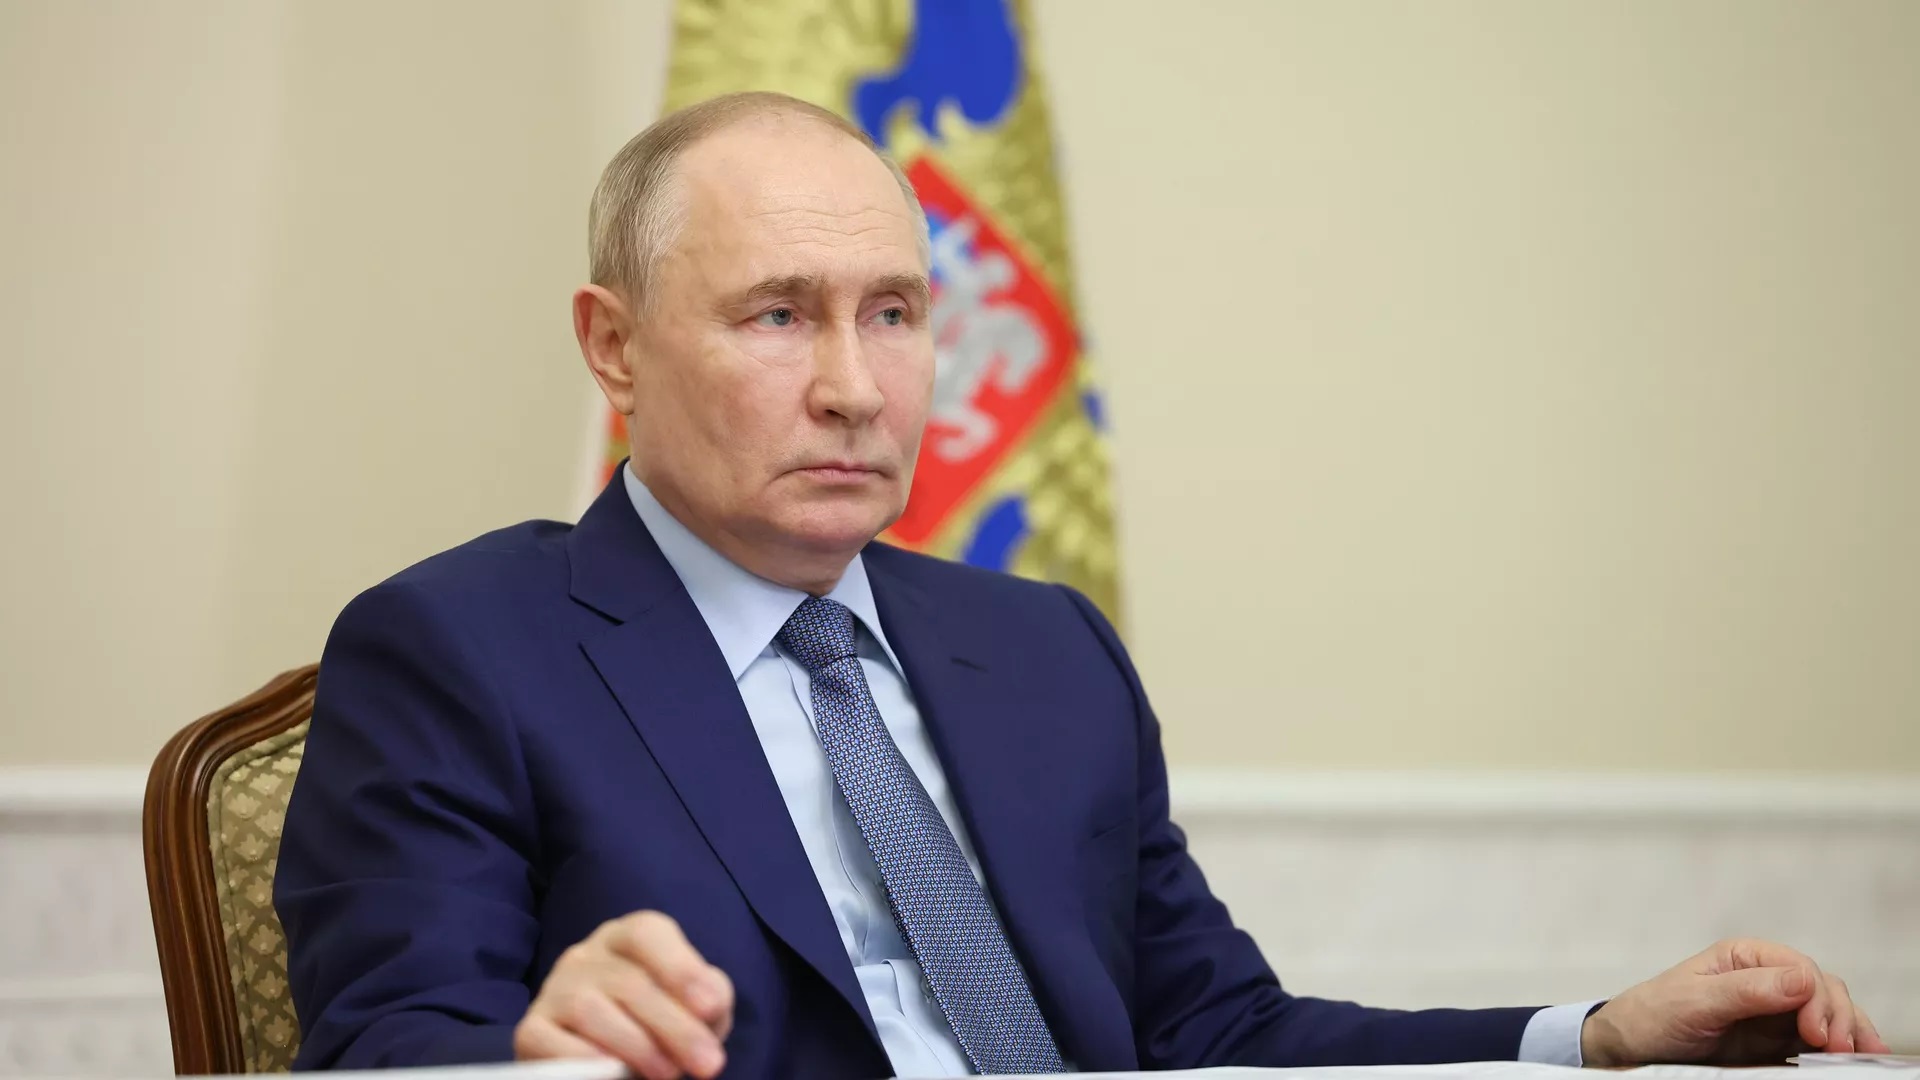 Tổng thống Putin kêu gọi xem xét nghiêm túc các mối đe dọa chống Nga